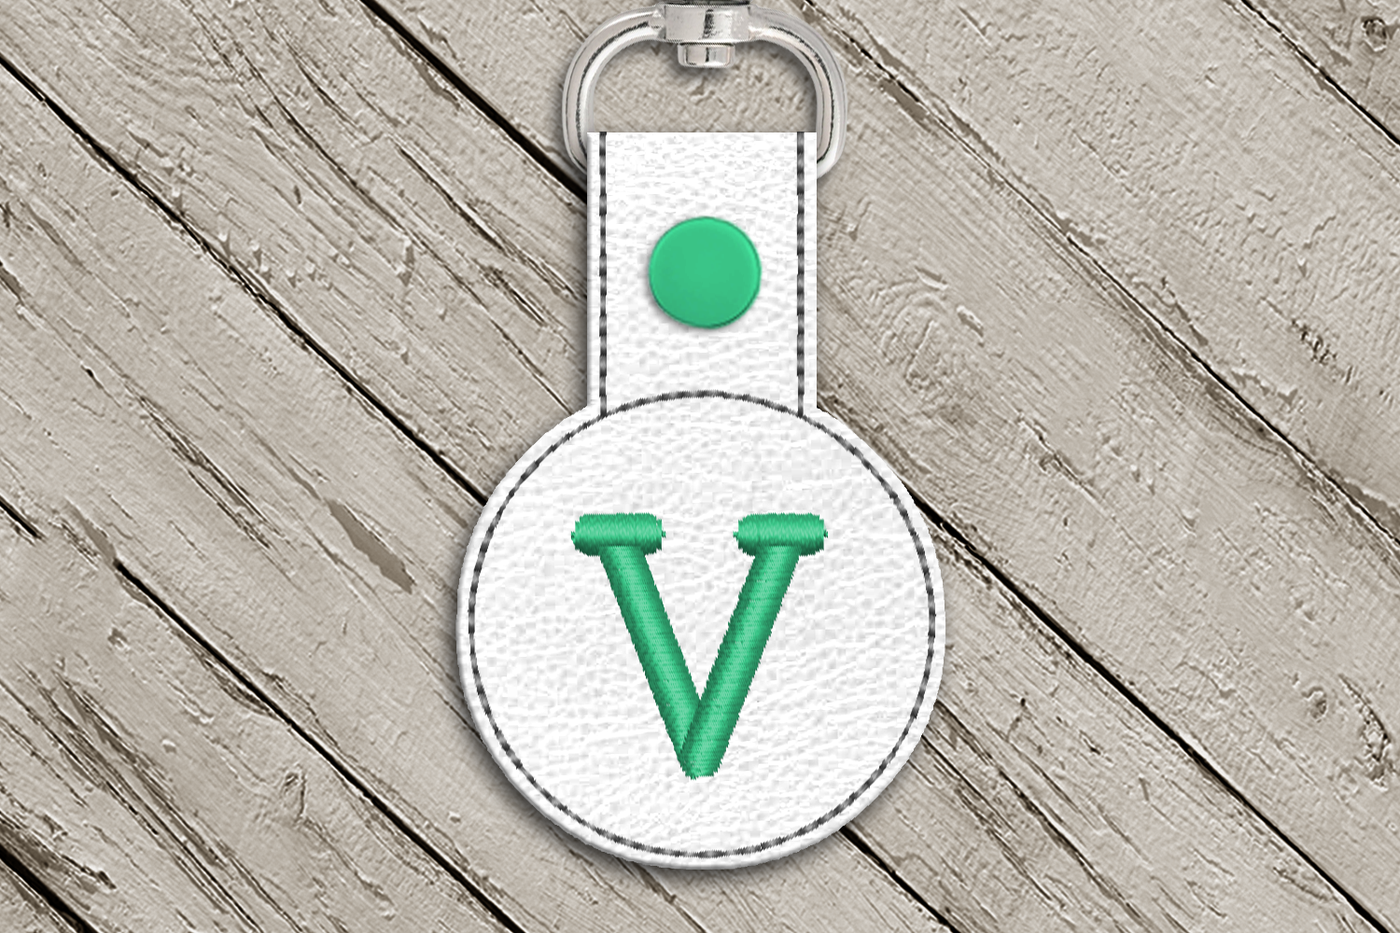 Letter V in the hoop key fob design